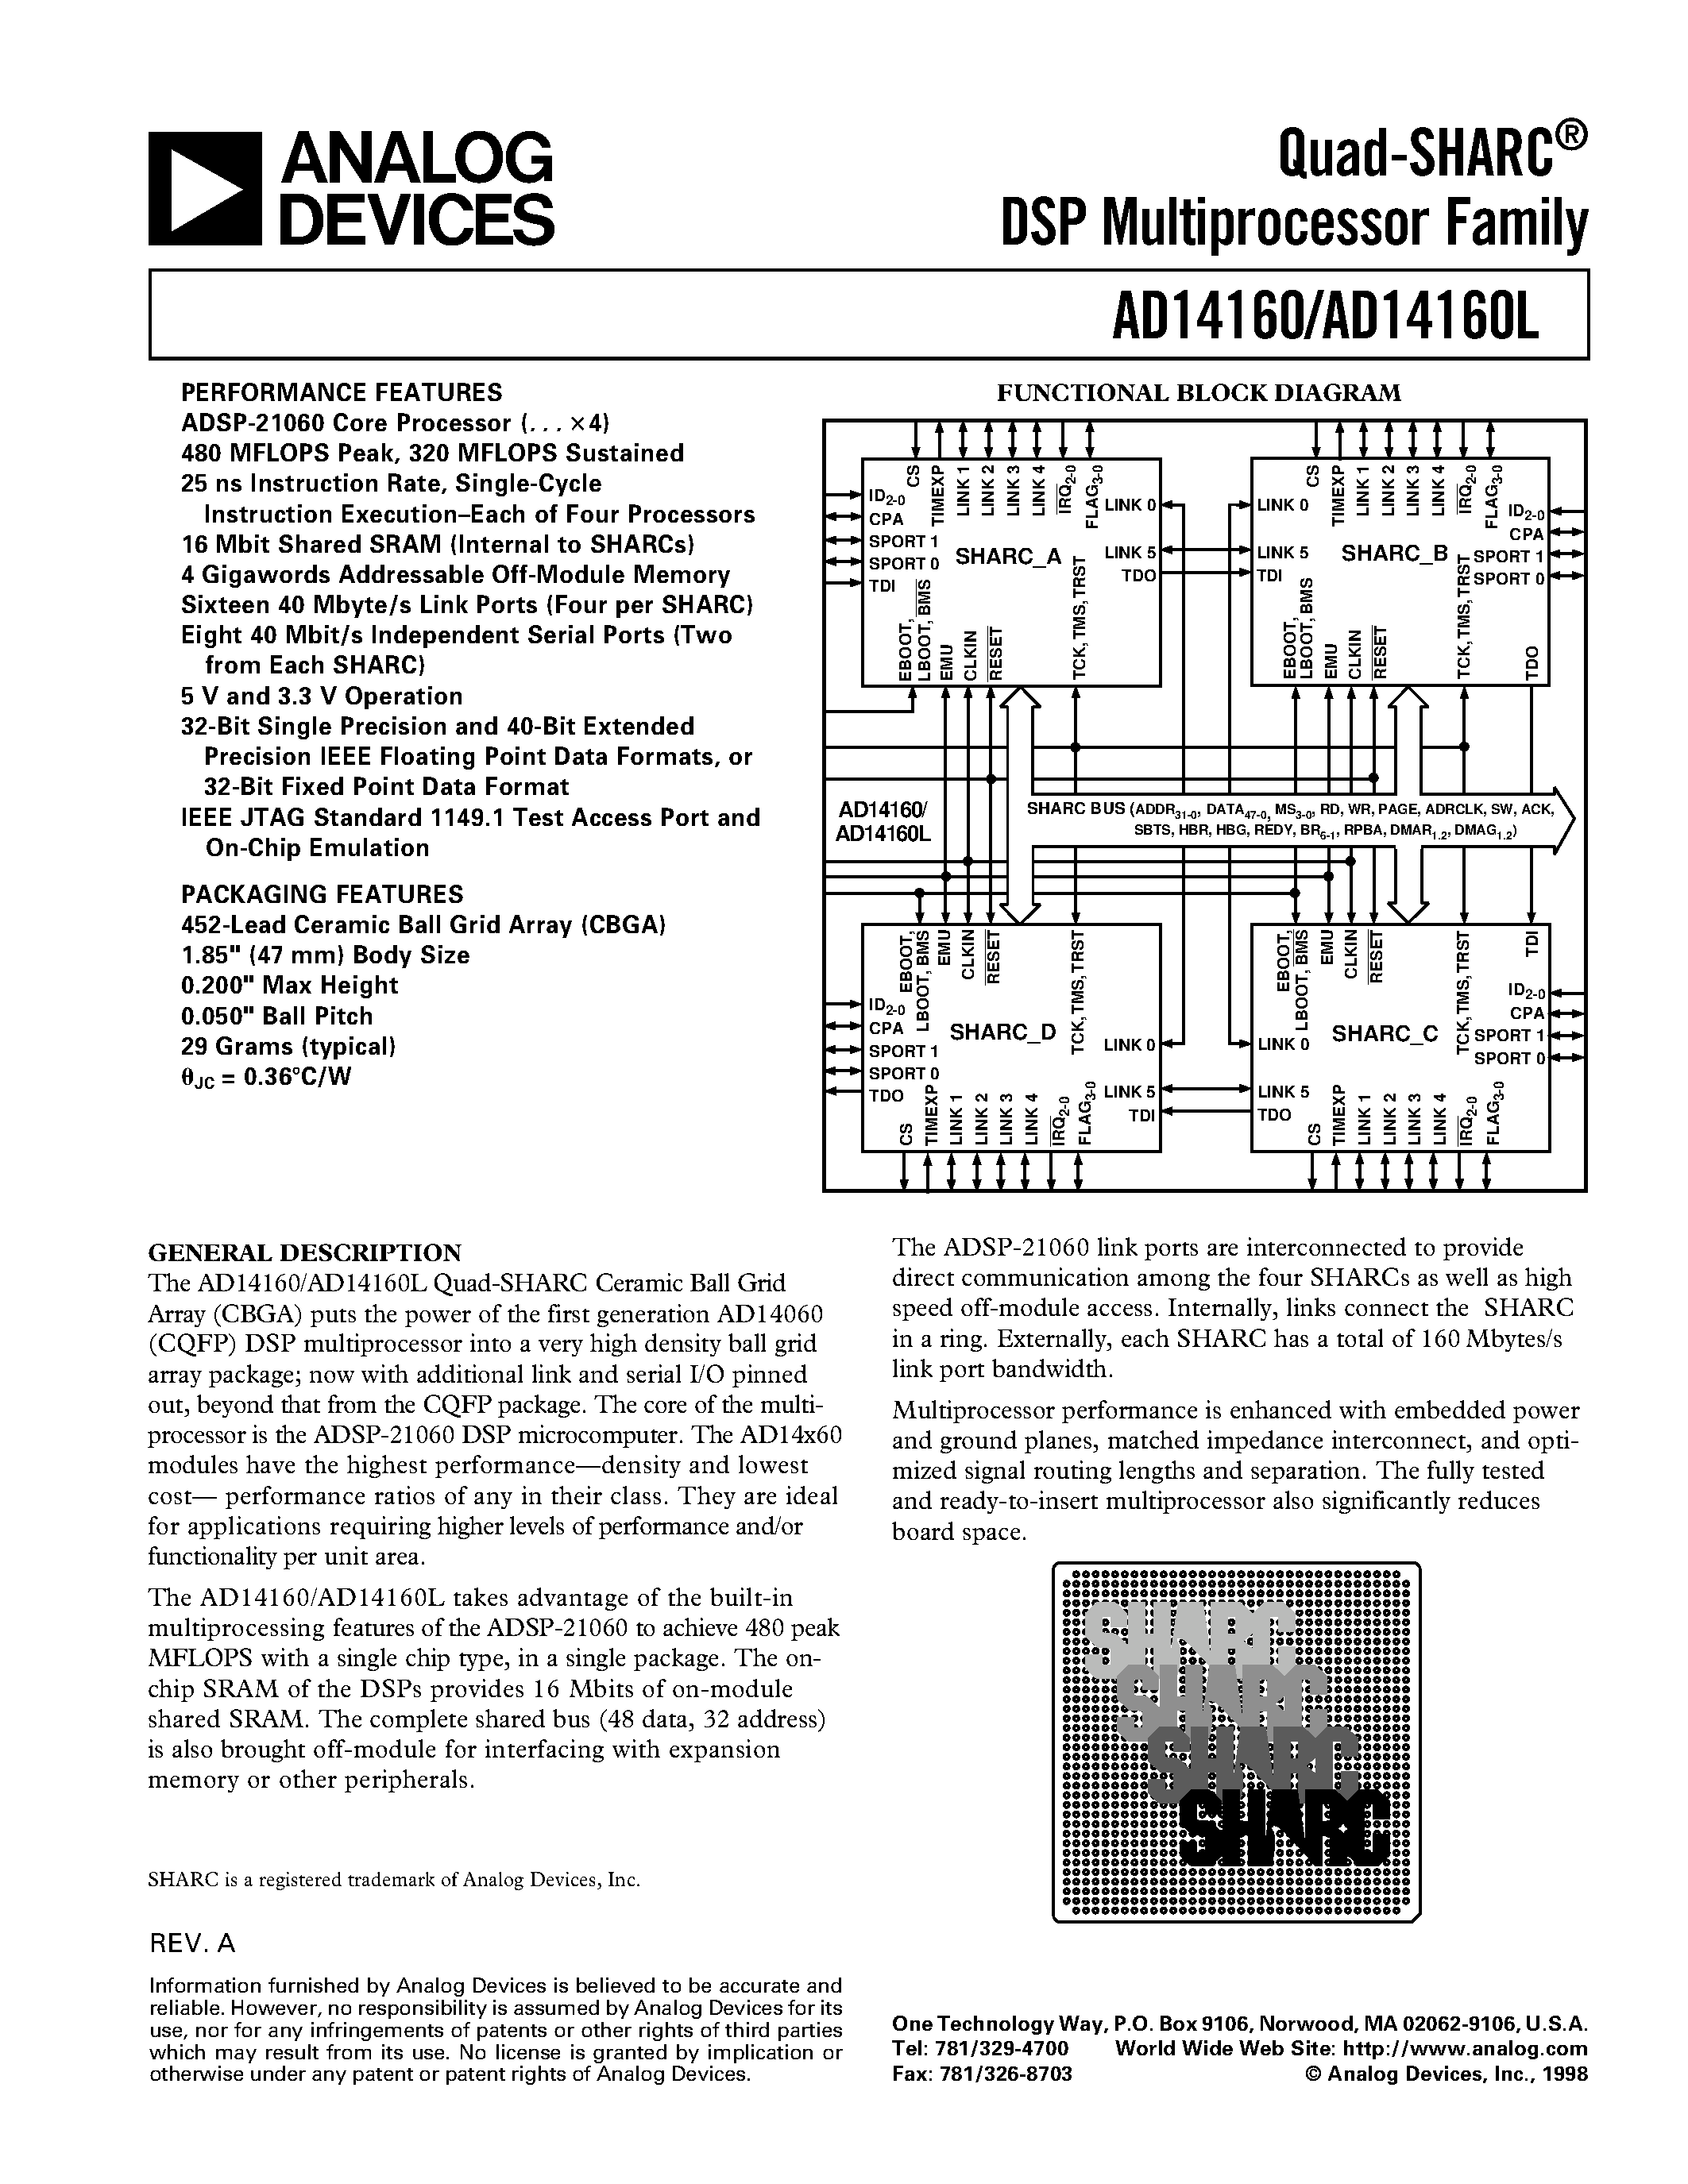 Даташит AD14160LBB-4 - Quad-SHARC DSP Multiprocessor Family страница 1